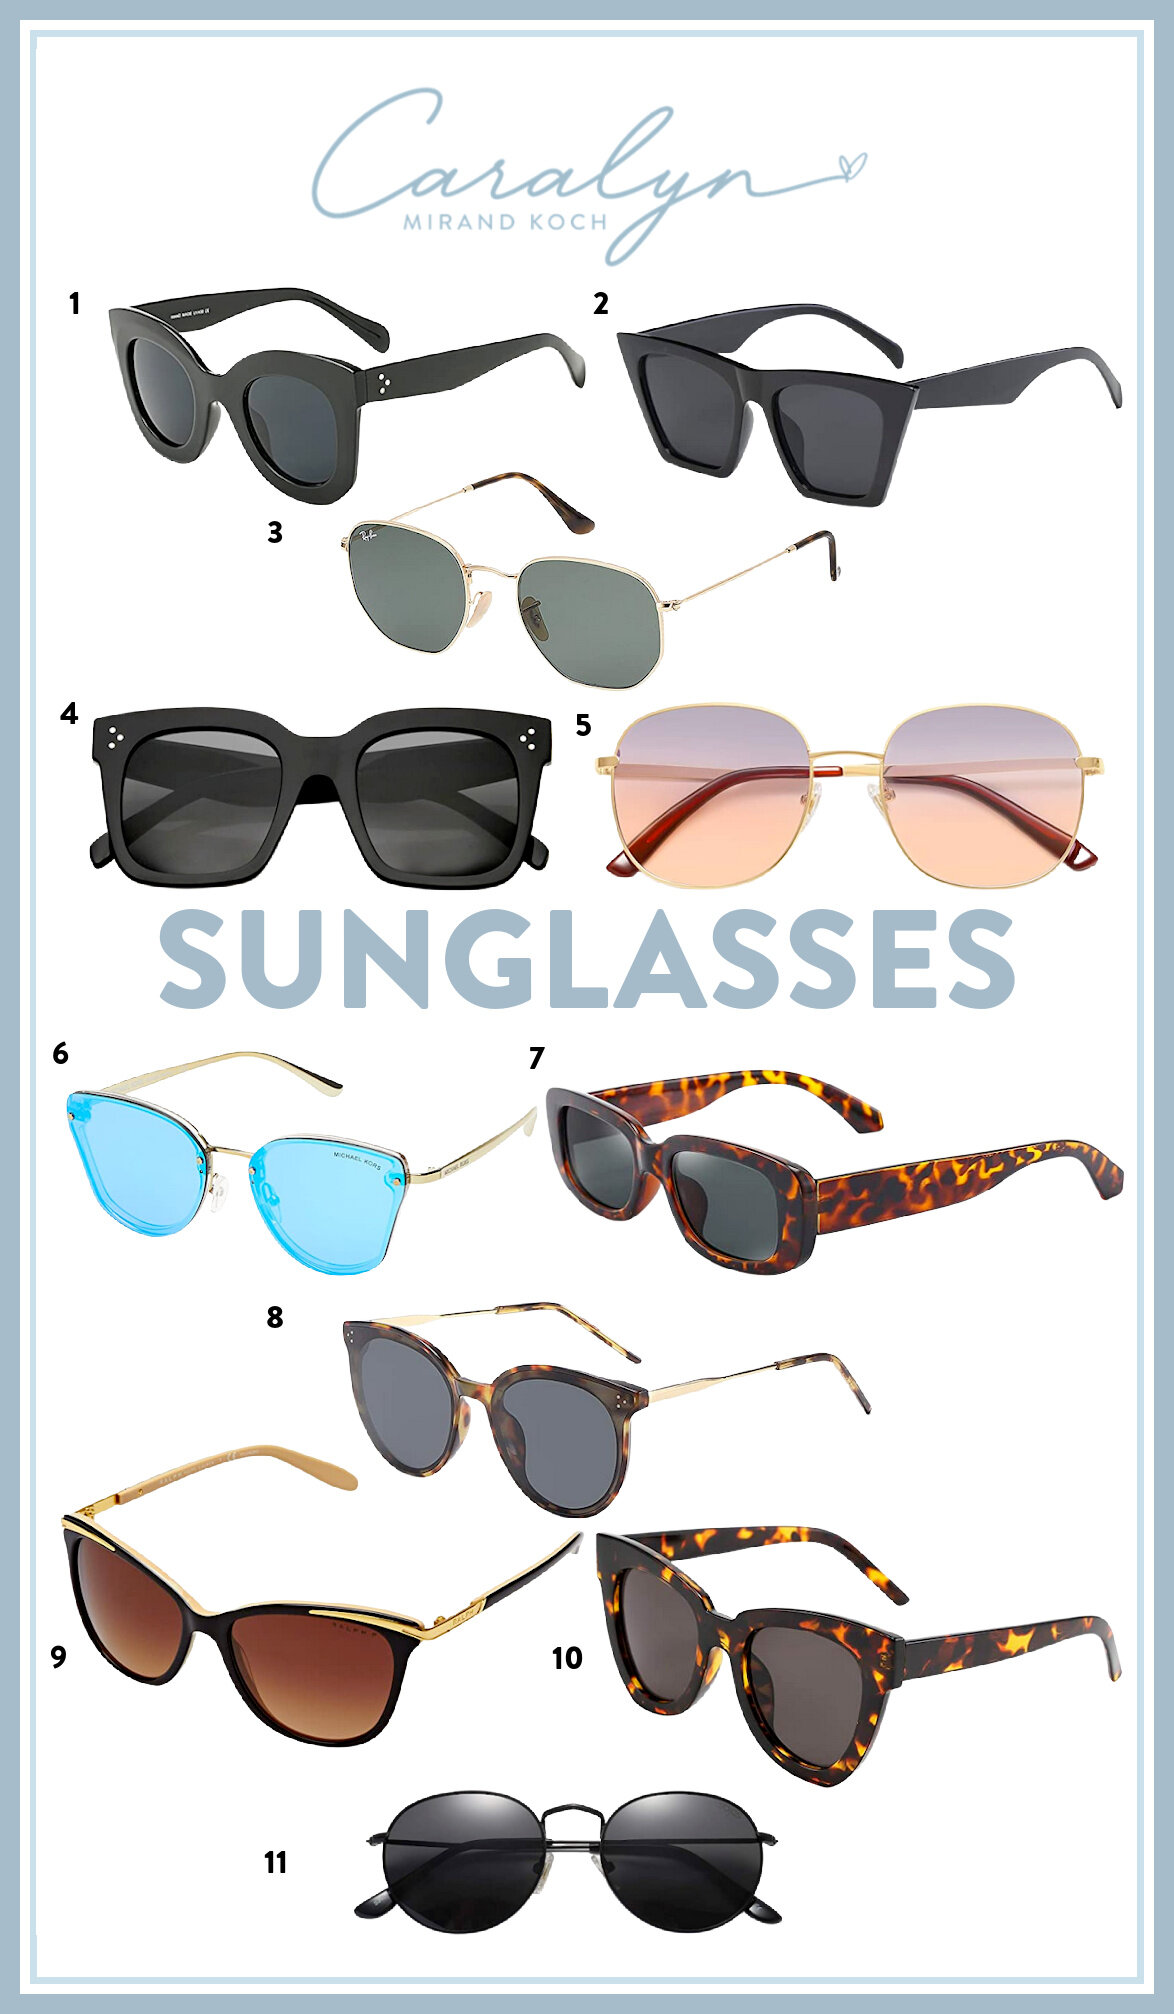 Sunglasses I Love From Amazon Fashion — Caralyn Mirand Koch